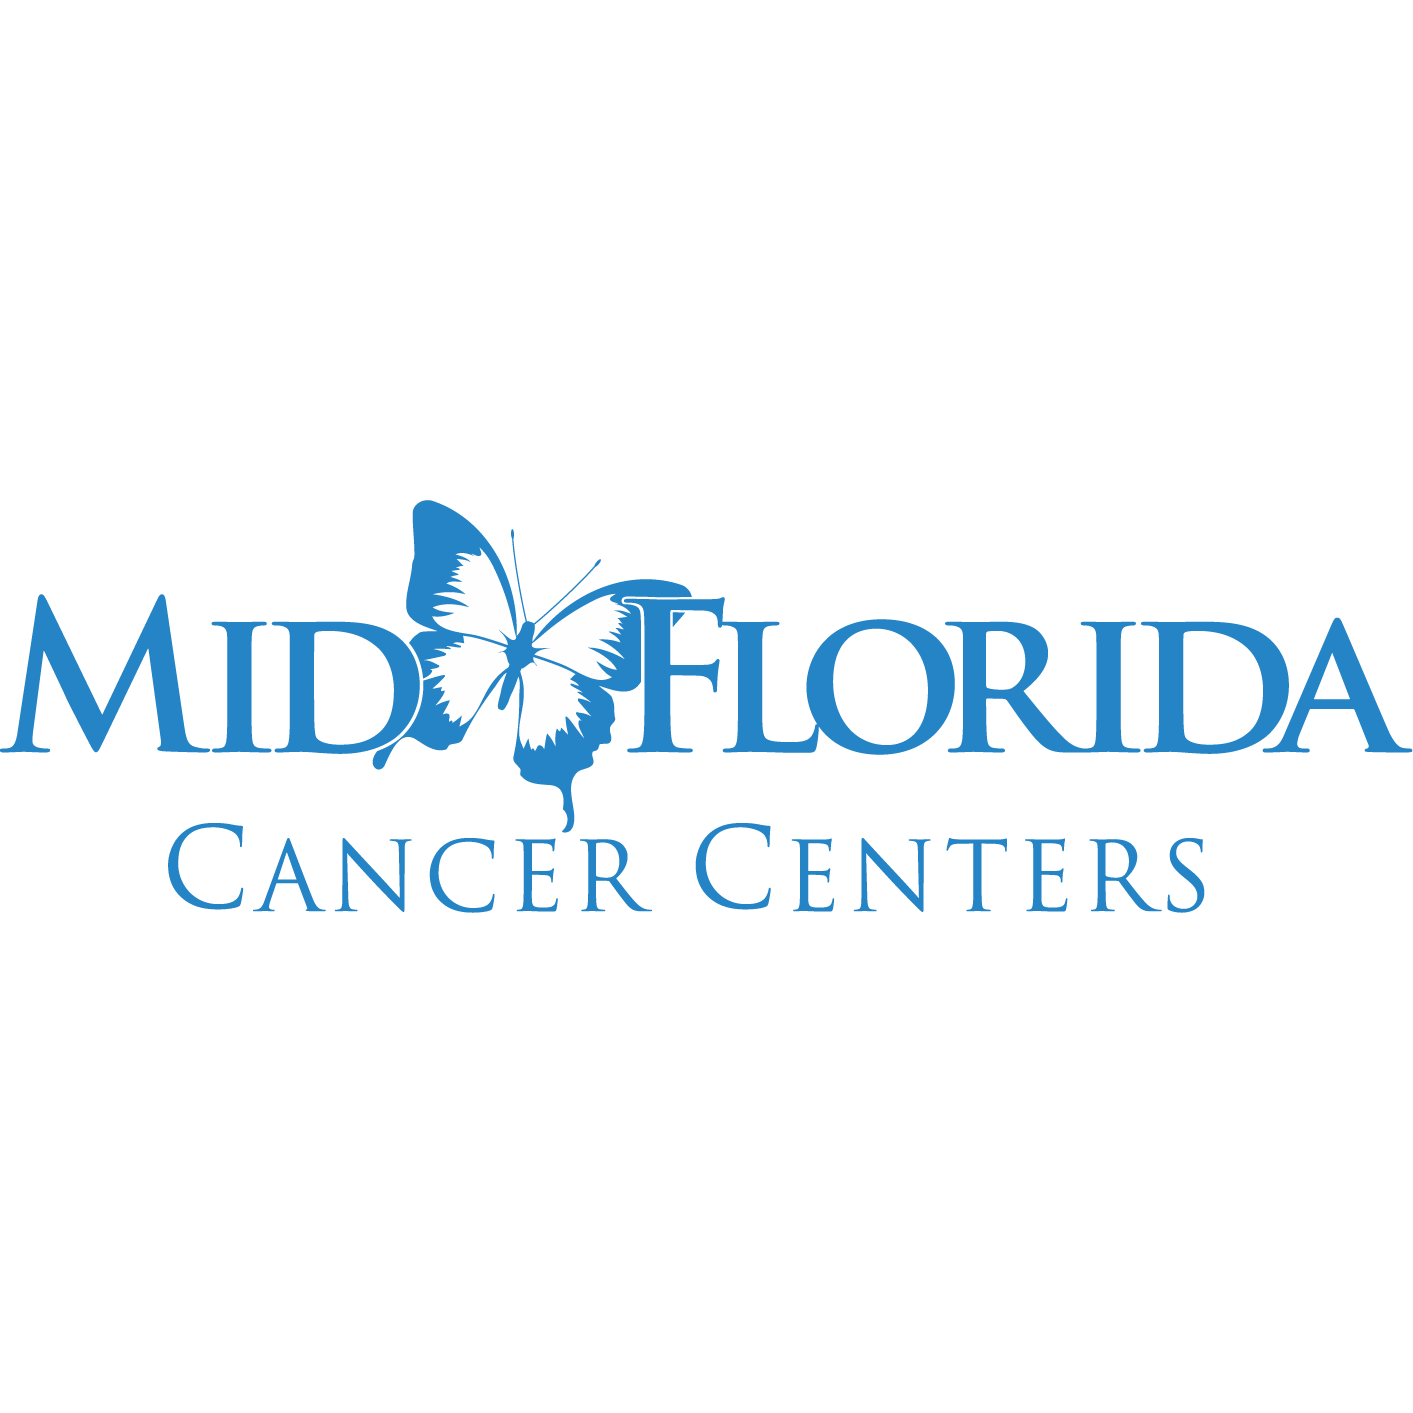 Mid Florida Cancer Centers - Orange City, FL 32763 - (386)774-1223 | ShowMeLocal.com